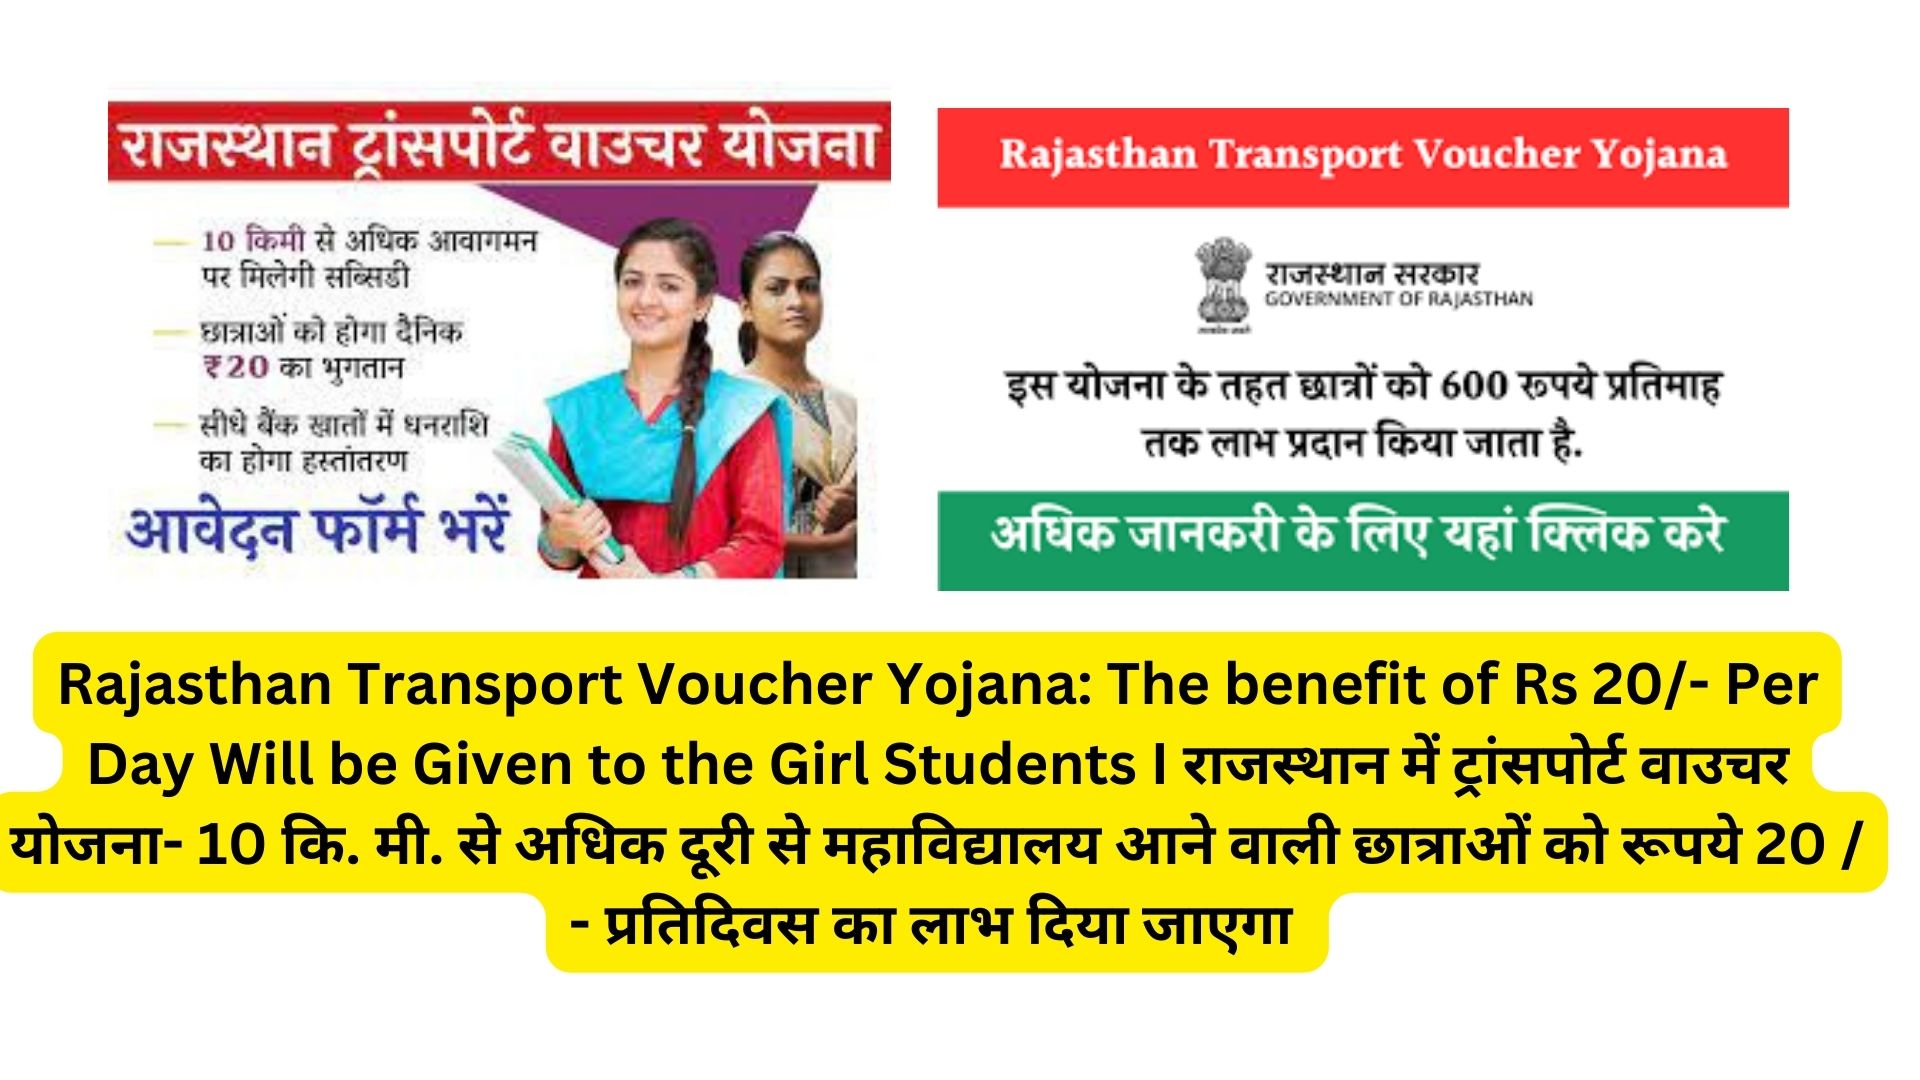 Rajasthan Transport Voucher Yojana: The benefit of Rs 20/- Per Day Will be Given to the Girl Students I राजस्थान में ट्रांसपोर्ट वाउचर योजना- 10 कि. मी. से अधिक दूरी से महाविद्यालय आने वाली छात्राओं को रूपये 20 / - प्रतिदिवस का लाभ दिया जाएगा